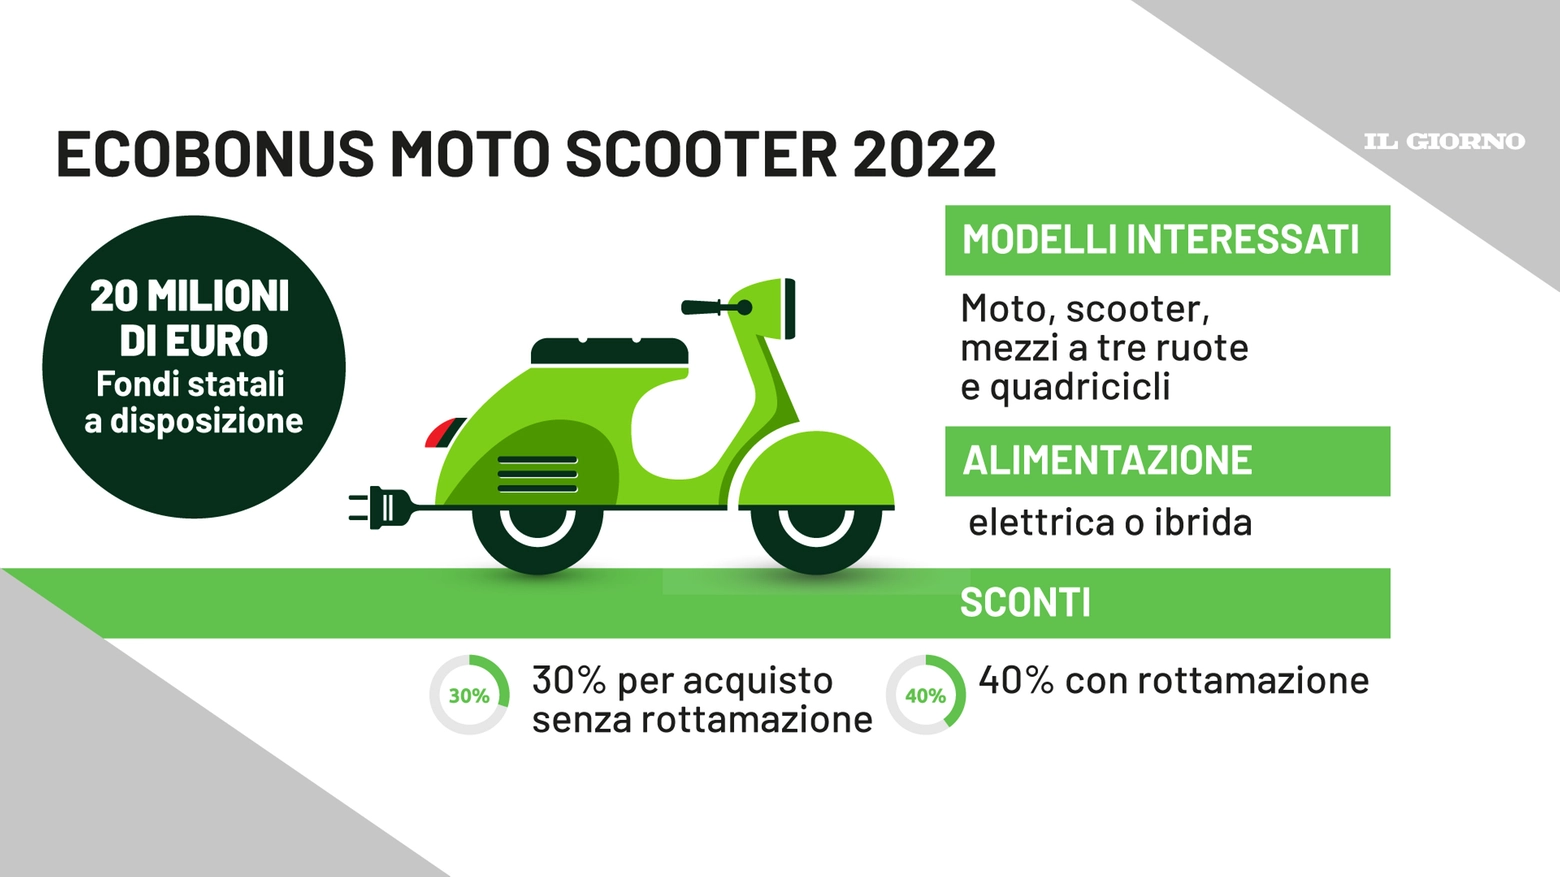 Ecobonus moto e scooter